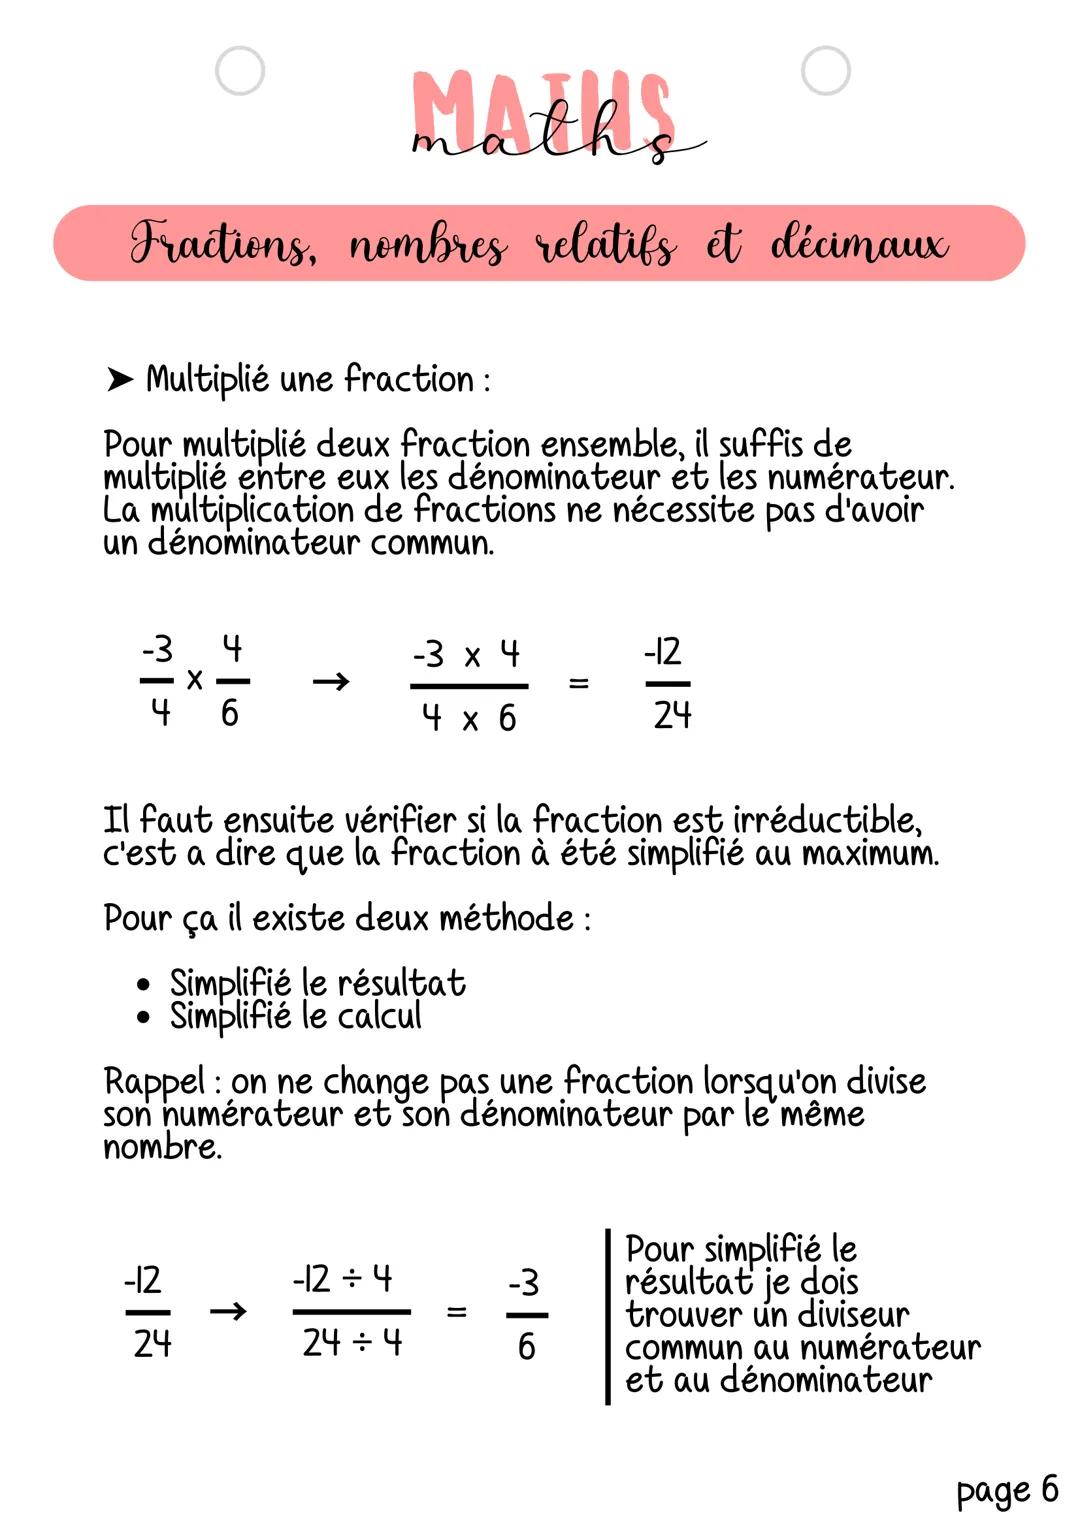 MAERS
Fractions, nombres relatifs et décimaux
Notion abordée: Pratiquer le calcul exact ou approché,
mental, à la main ou instrumenté.
Calcu